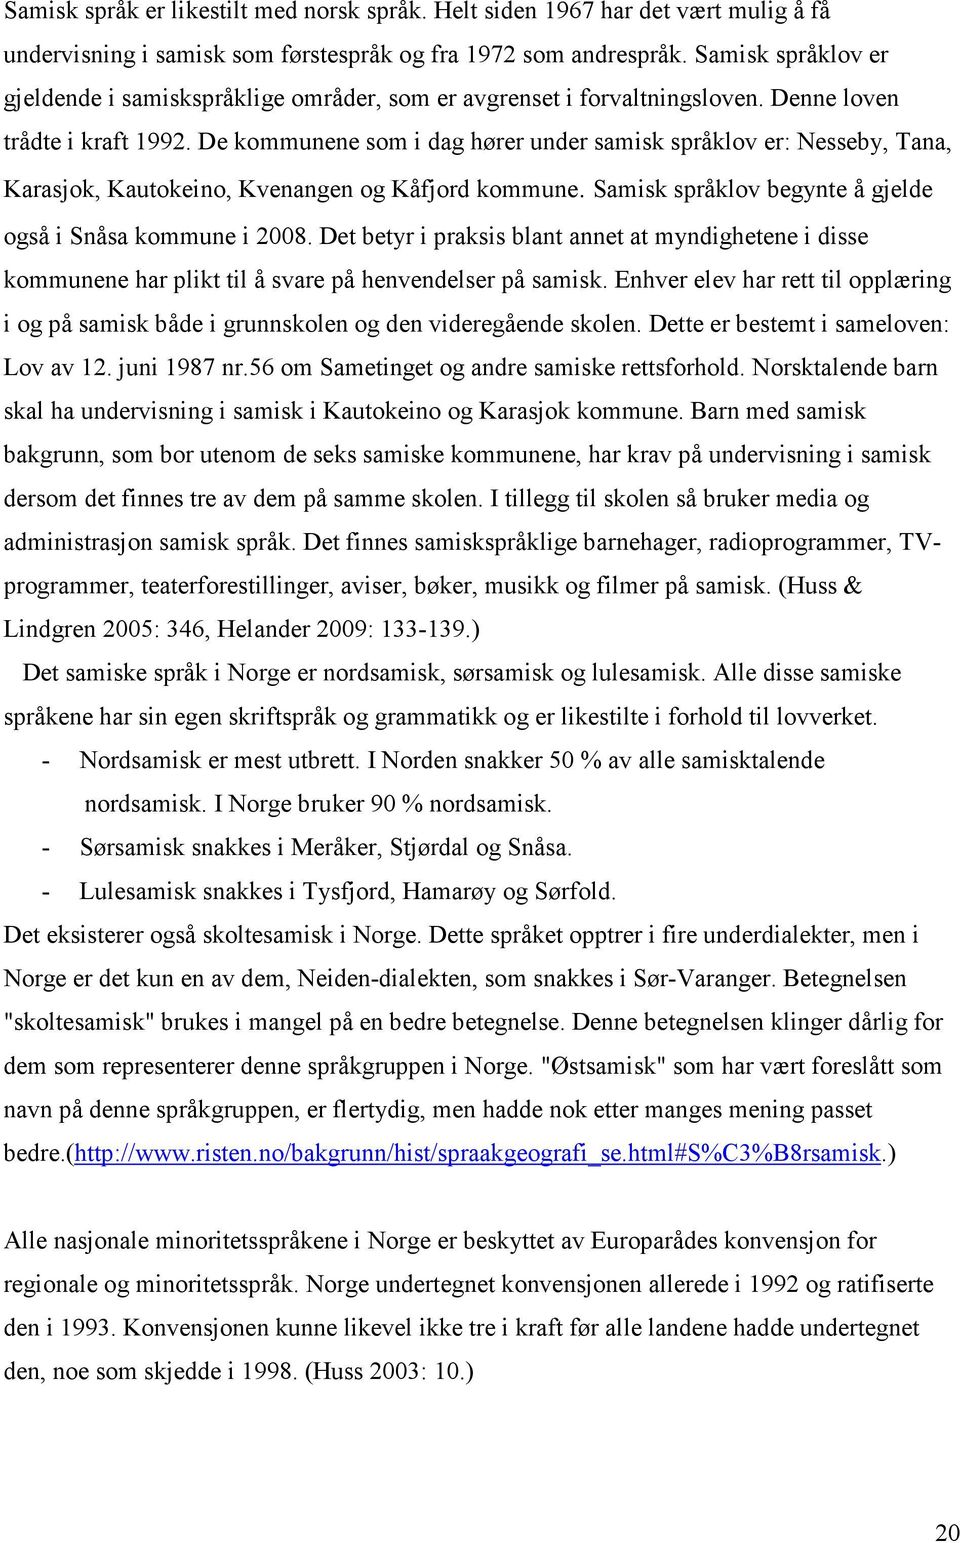 De kommunene som i dag hører under samisk språklov er: Nesseby, Tana, Karasjok, Kautokeino, Kvenangen og Kåfjord kommune. Samisk språklov begynte å gjelde også i Snåsa kommune i 2008.